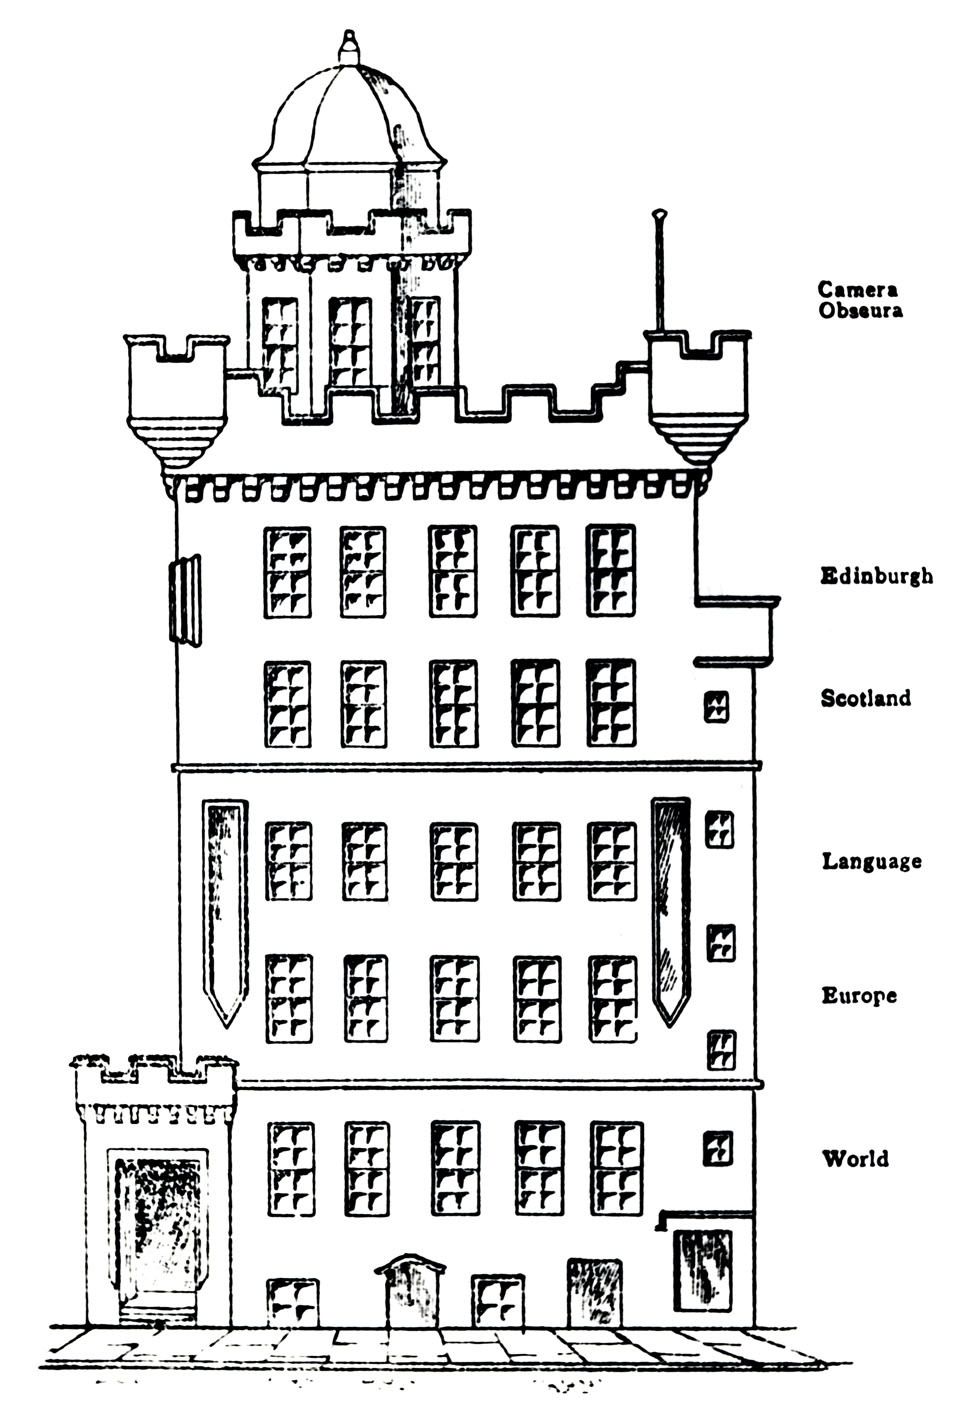 Az Outlook Tower homlokzata. Forrás: beszkennelve Philip Boardman: The Worlds of Patrick Geddes című könyvéből